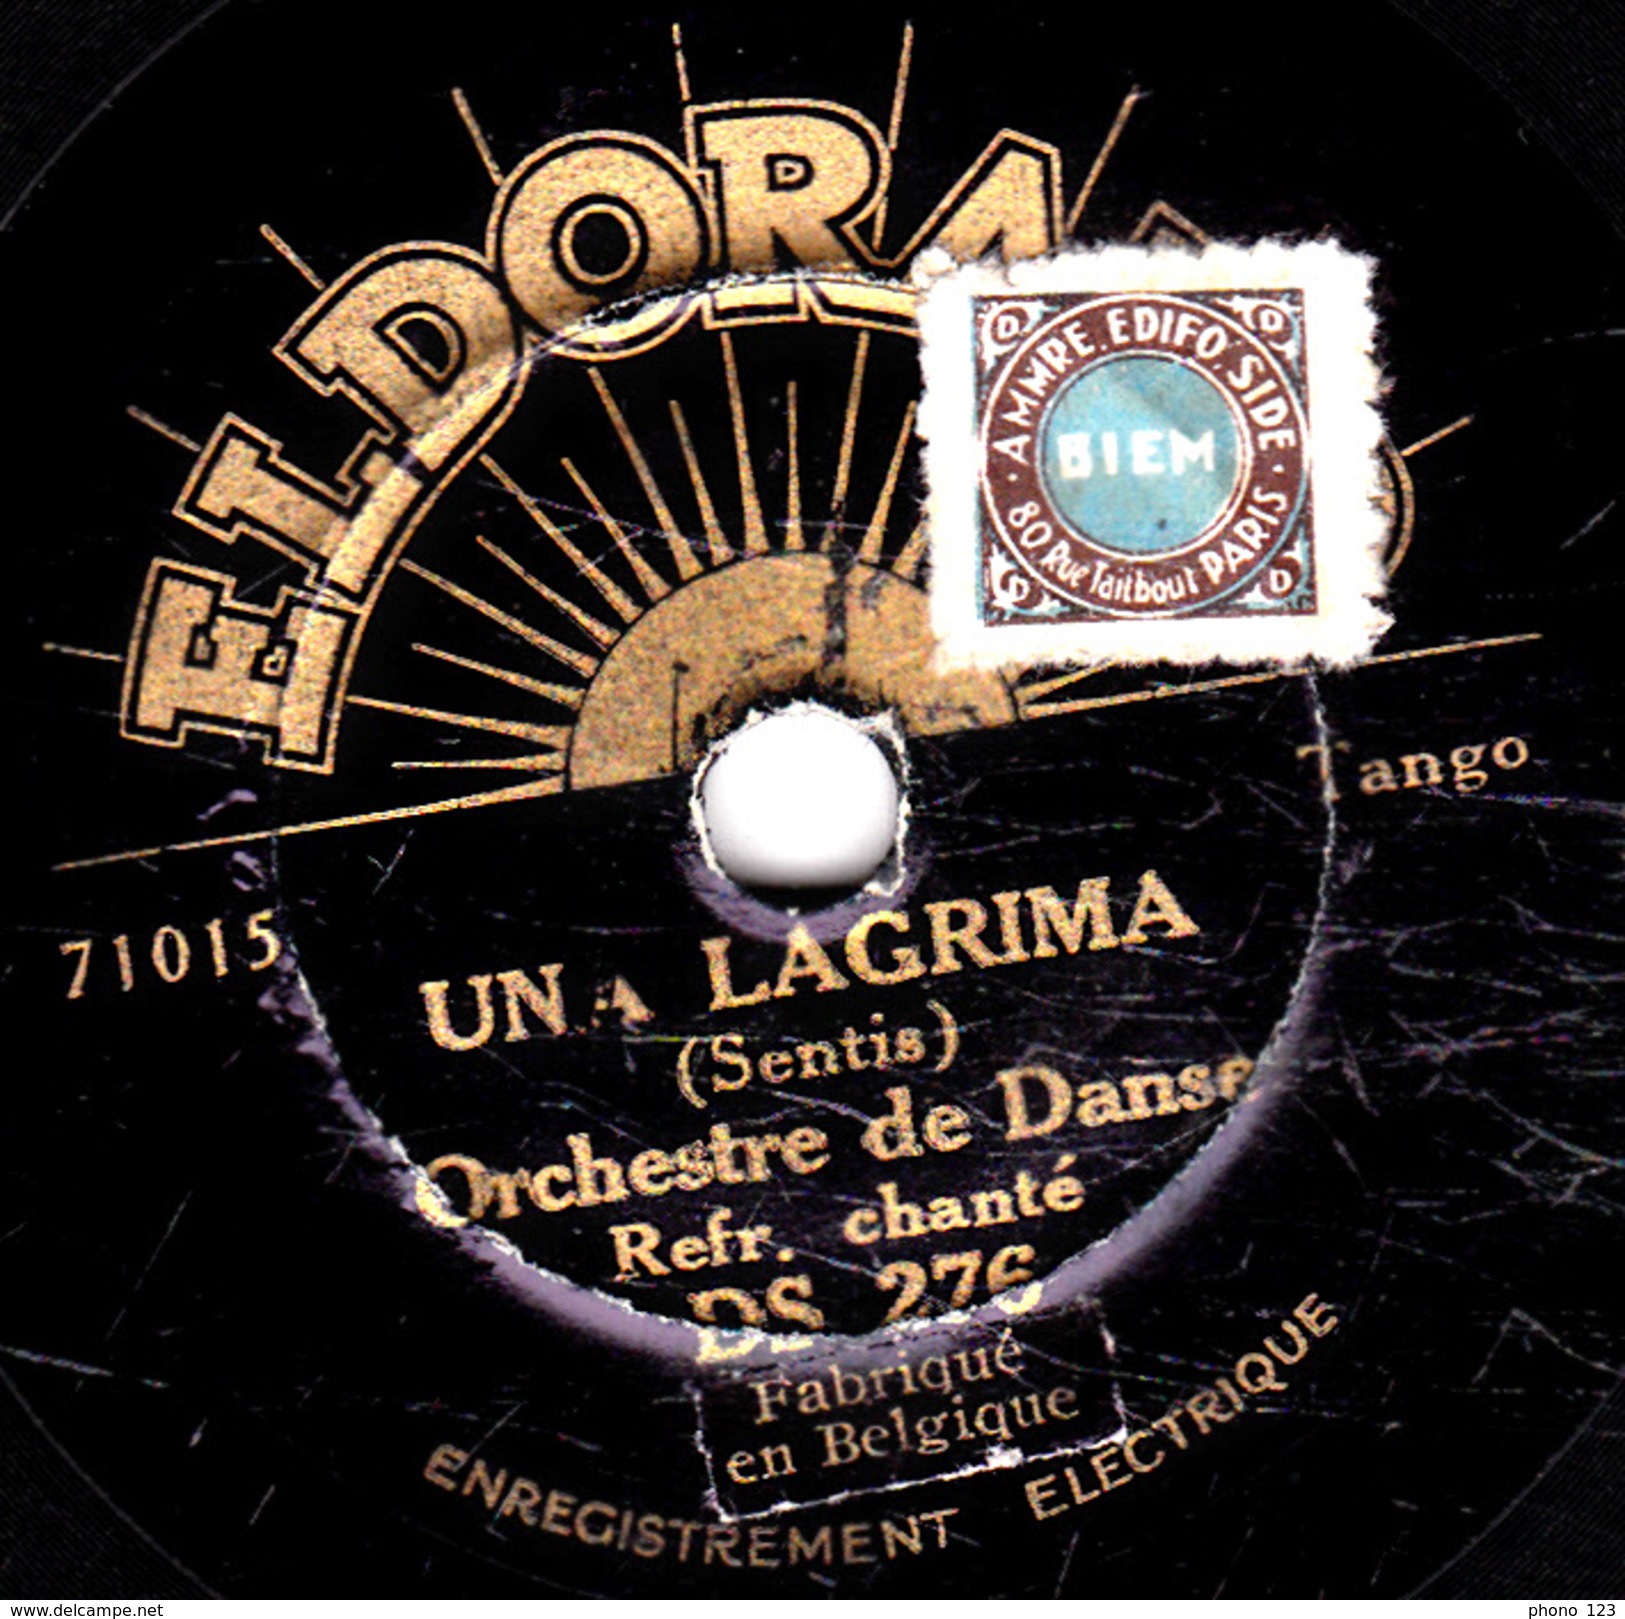 78 T. -  20 Cm - état B -  Orchestre De Danse - UNA LAGRIMA - SIEMPRE - 78 T - Disques Pour Gramophone